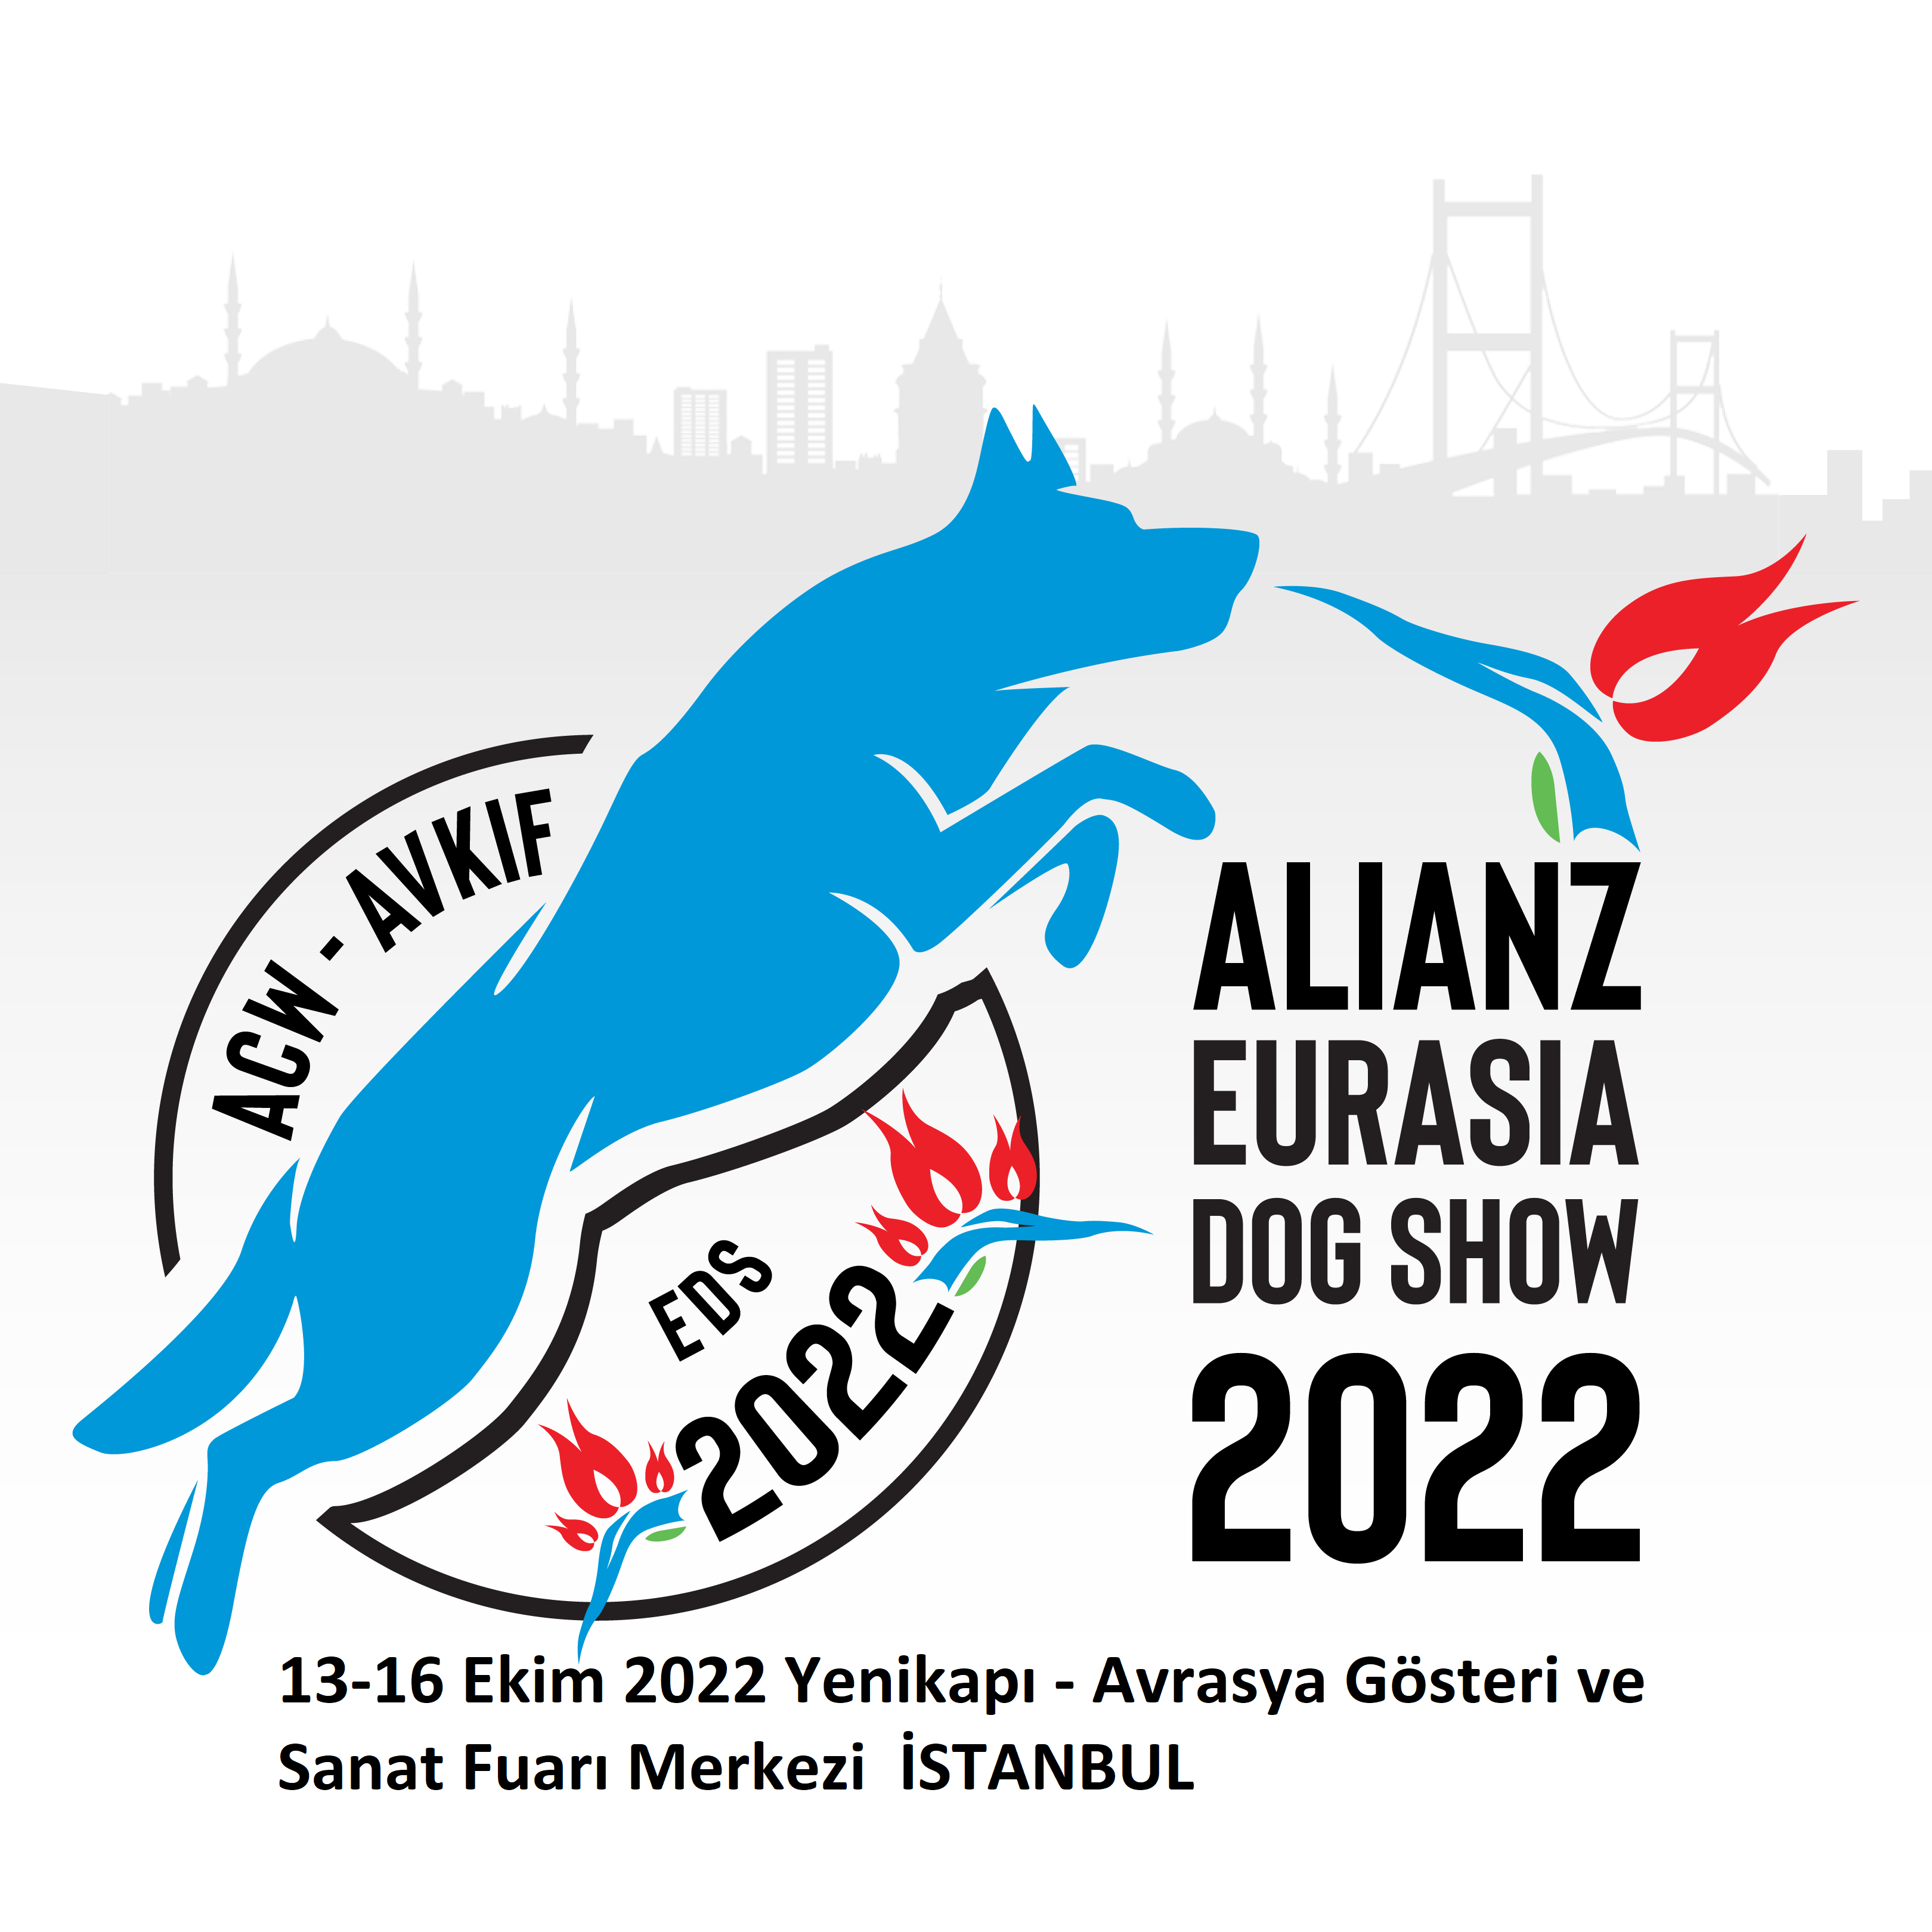 ALIANZ EURASIA DOG SHOW 2022 ISTANBUL